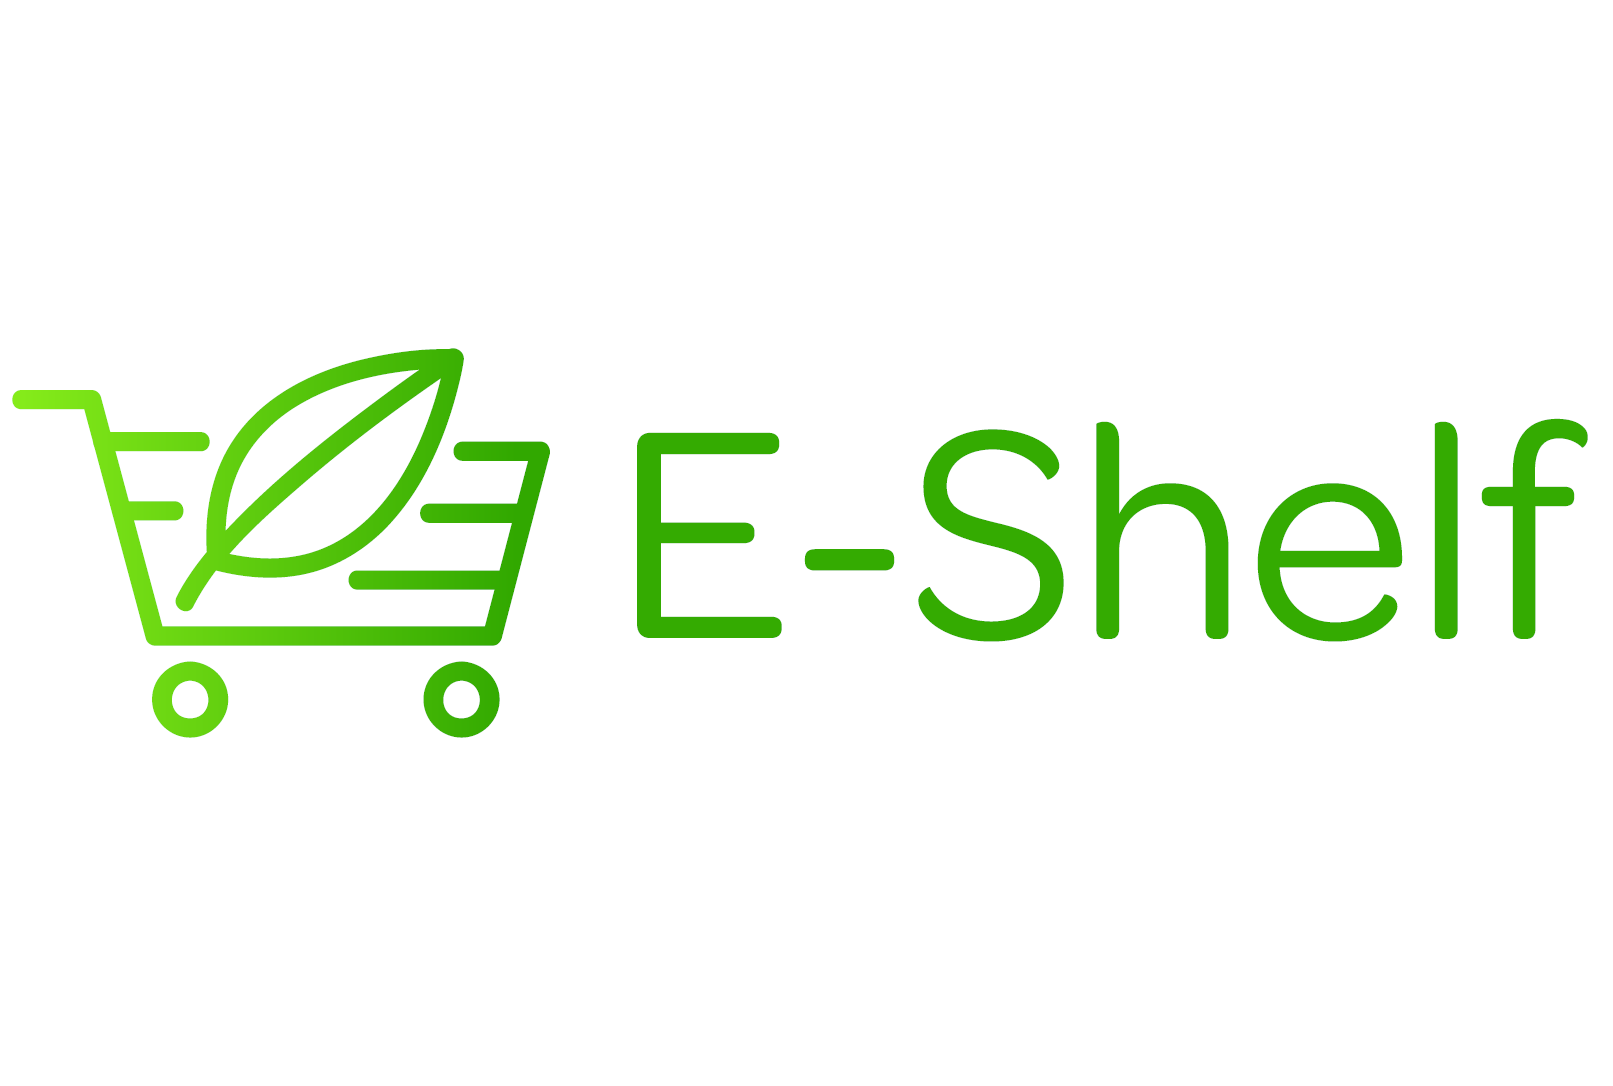 E-SHELF